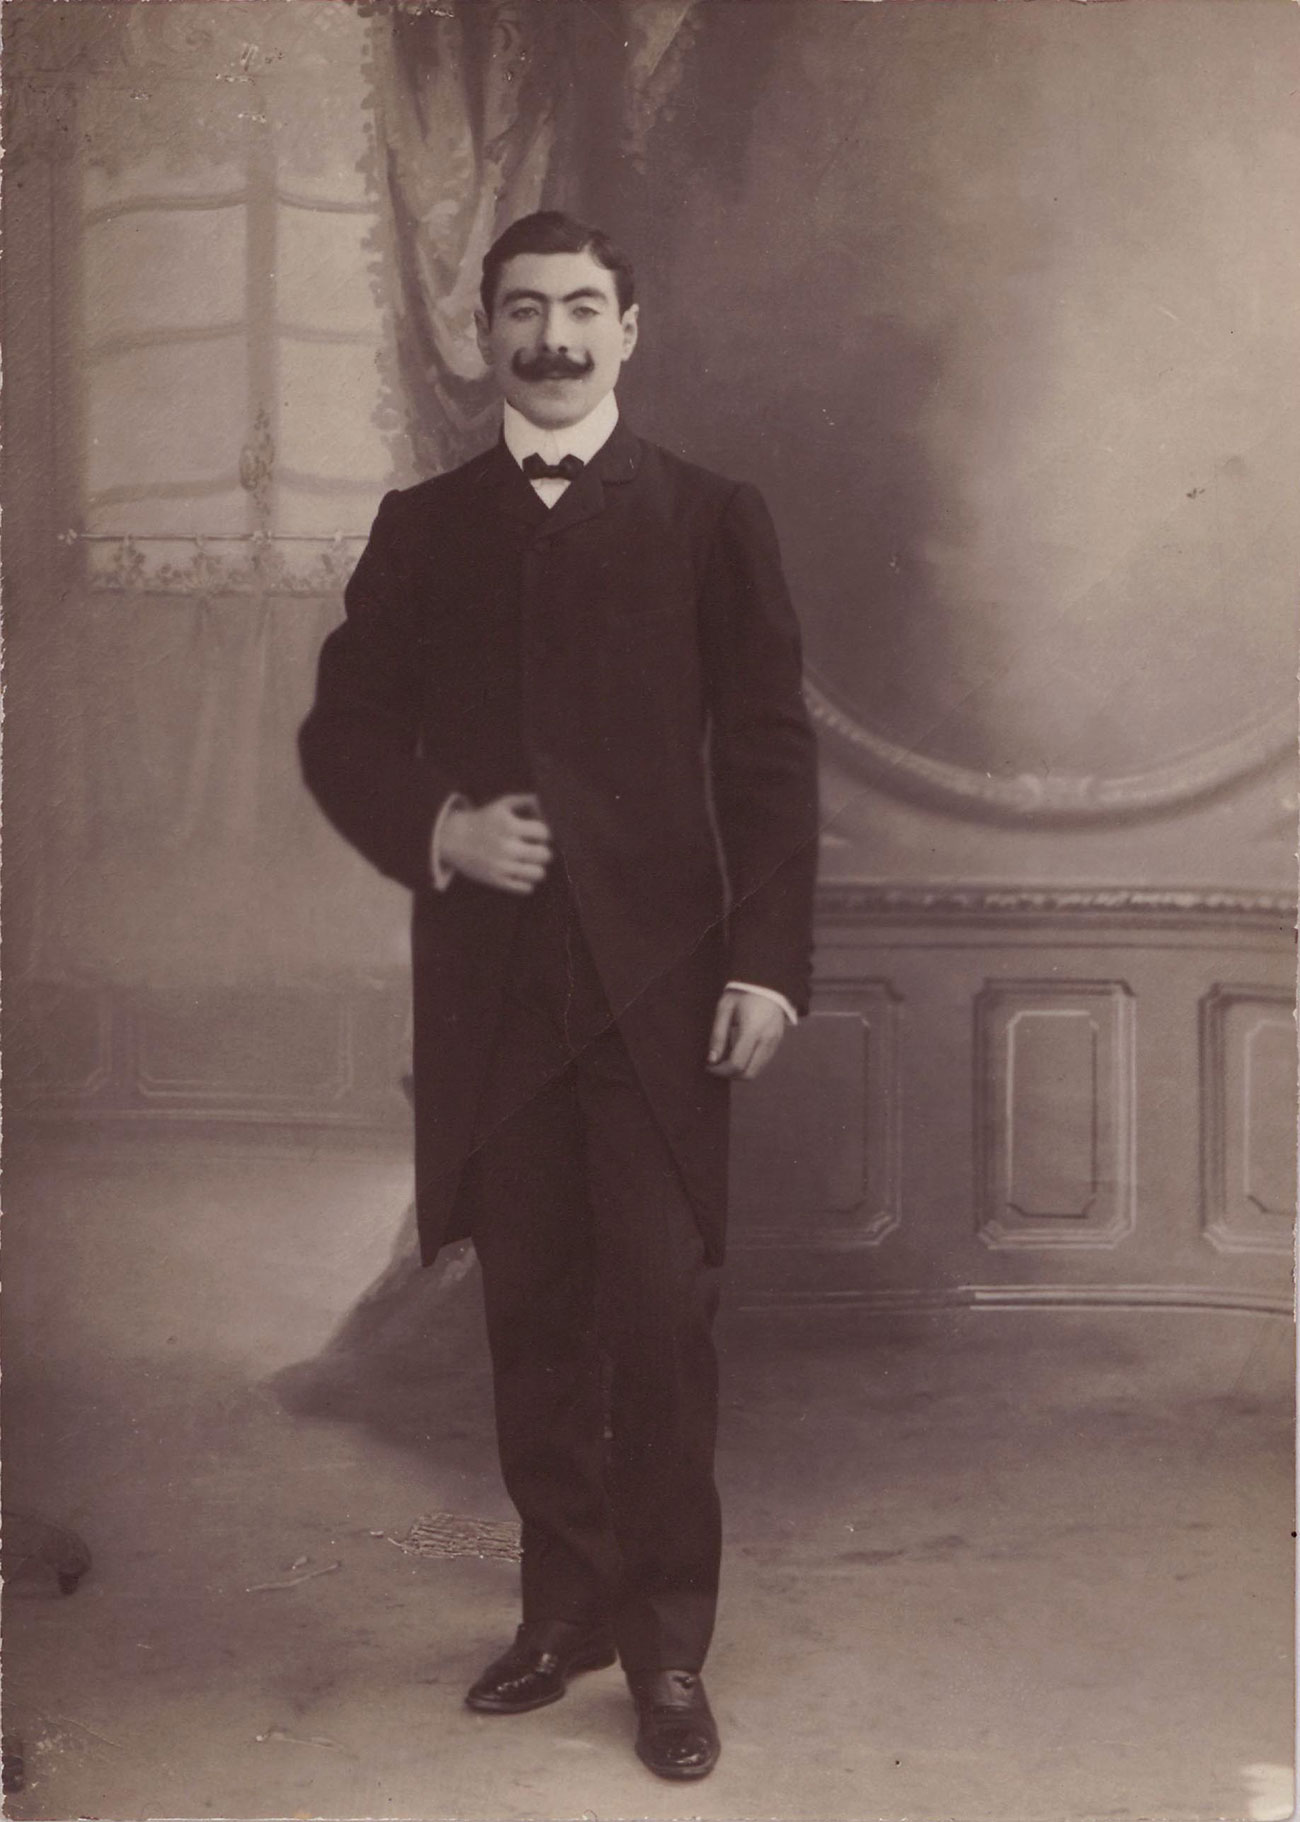 Le personnel de la banque ottomane, Roth Joseph © SALT Research, Ottoman Bank Archive